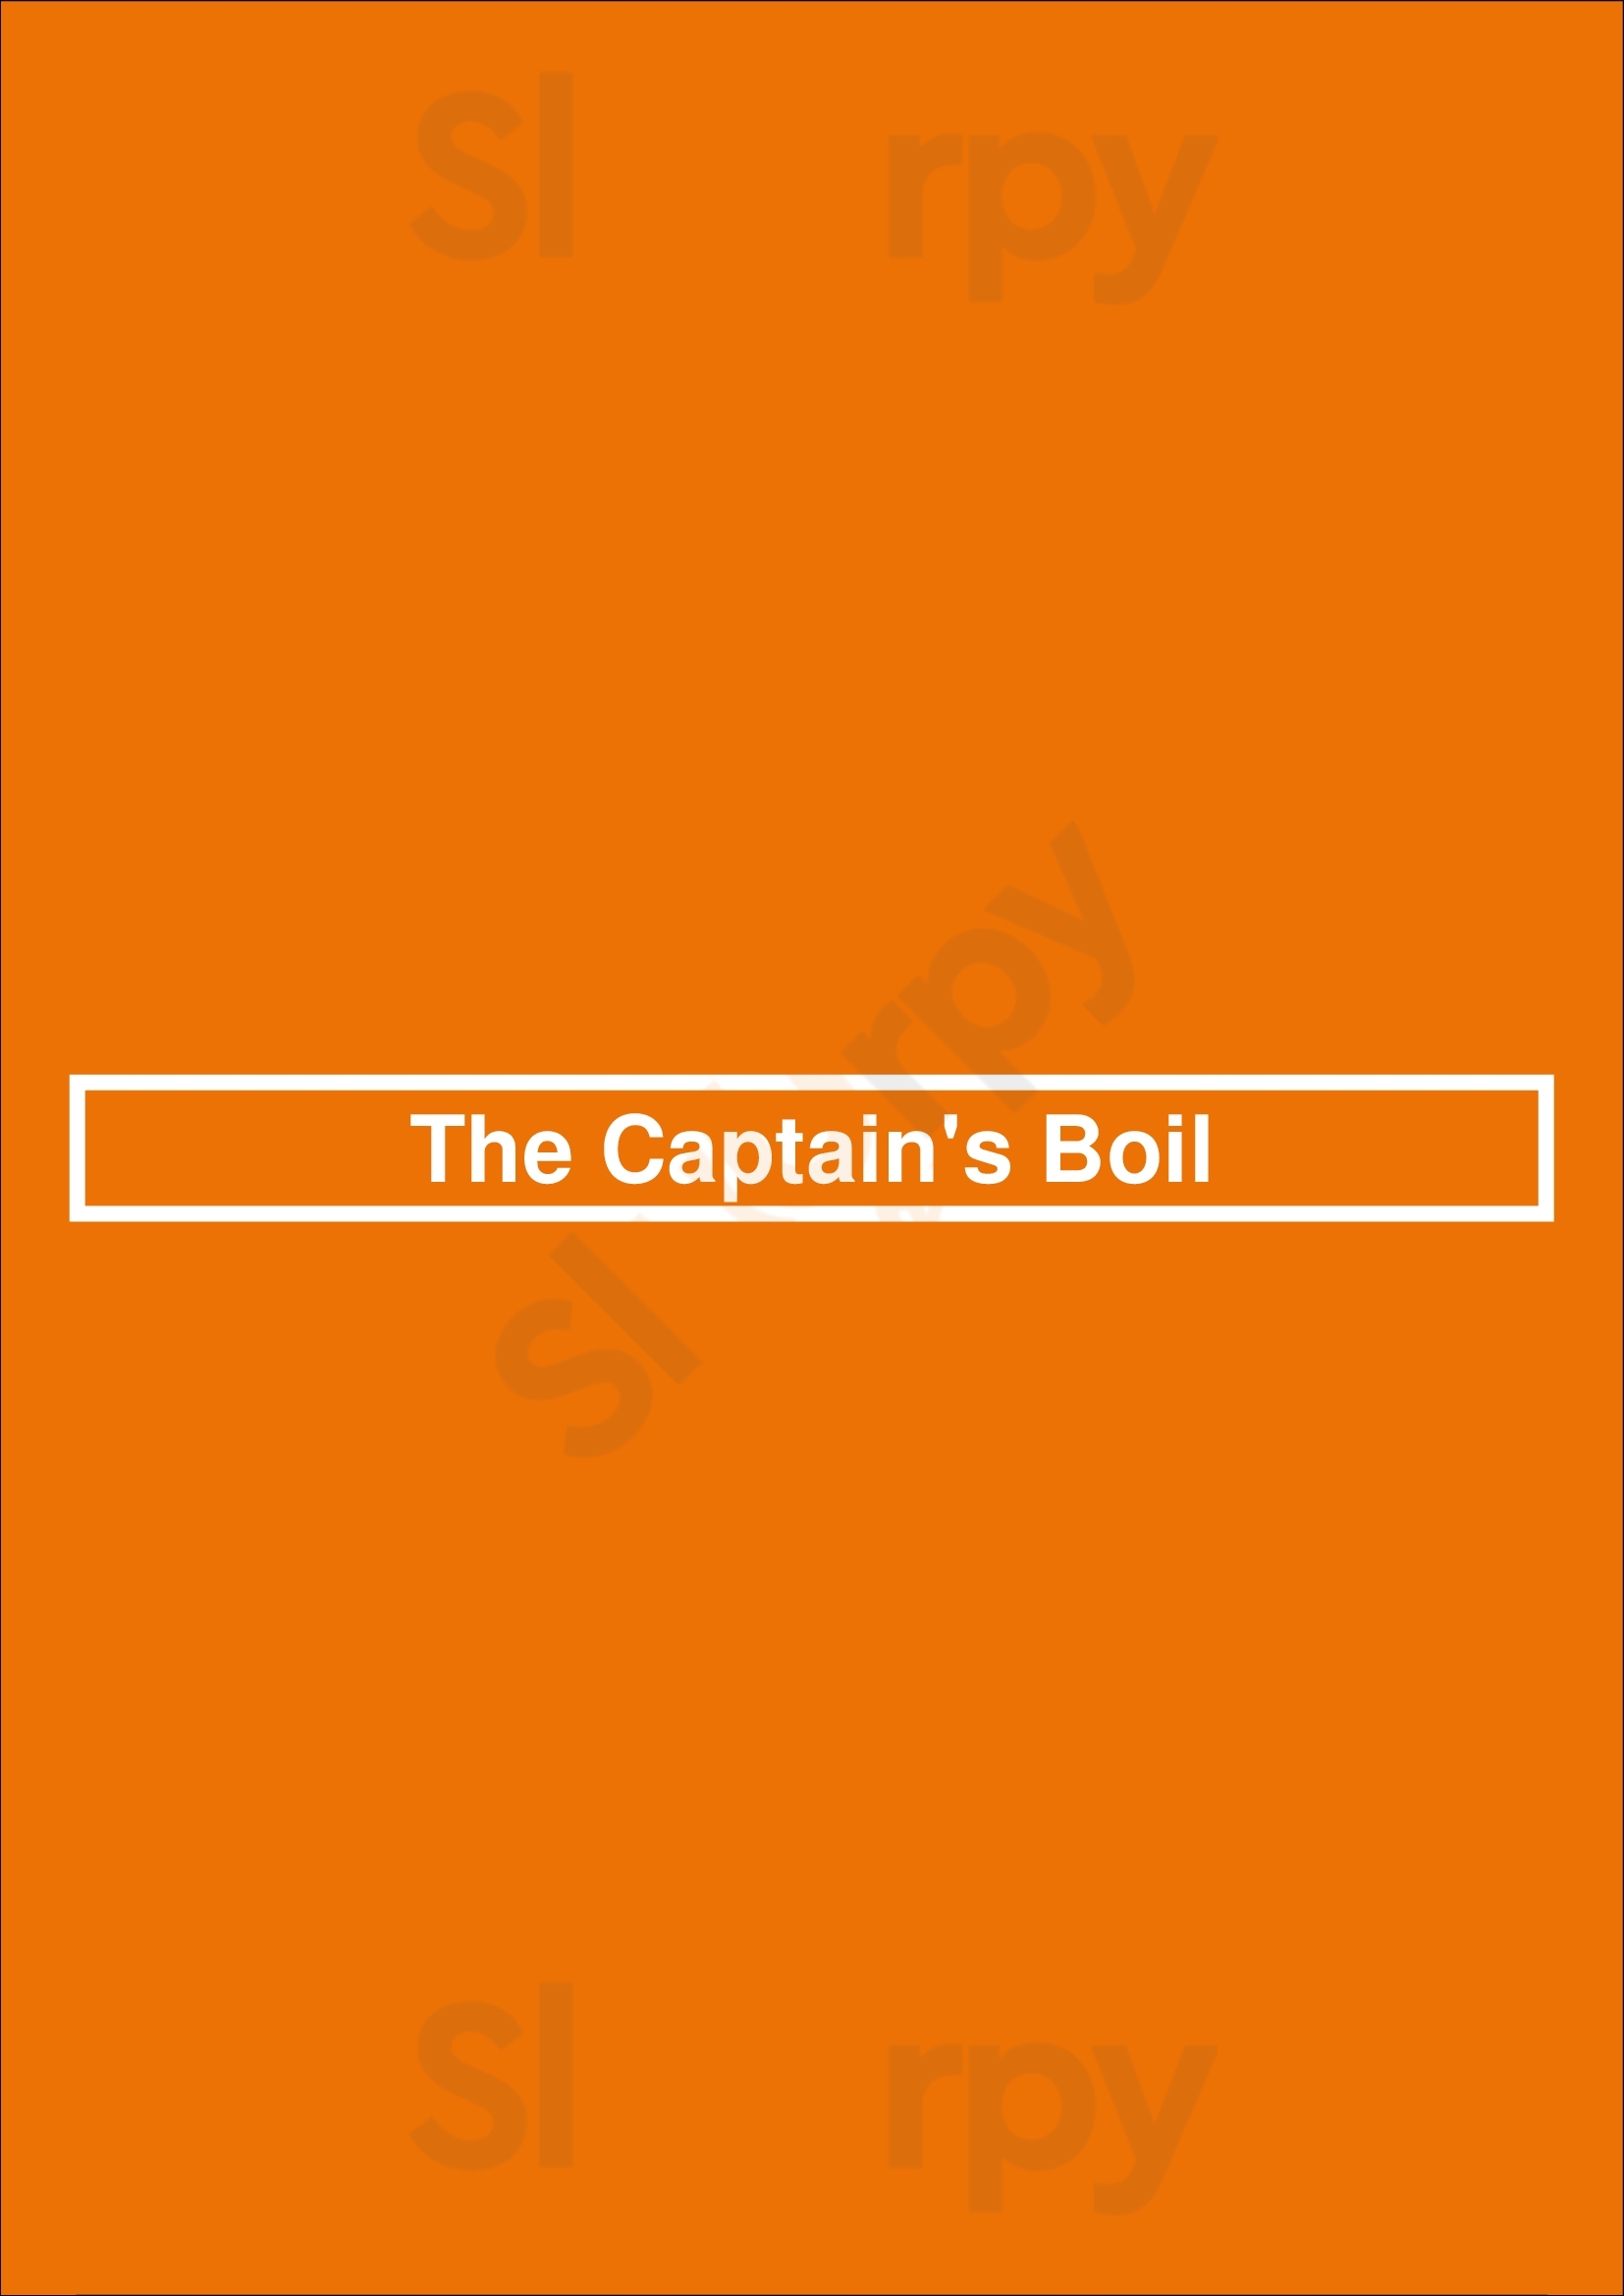 The Captain's Boil Vancouver Menu - 1